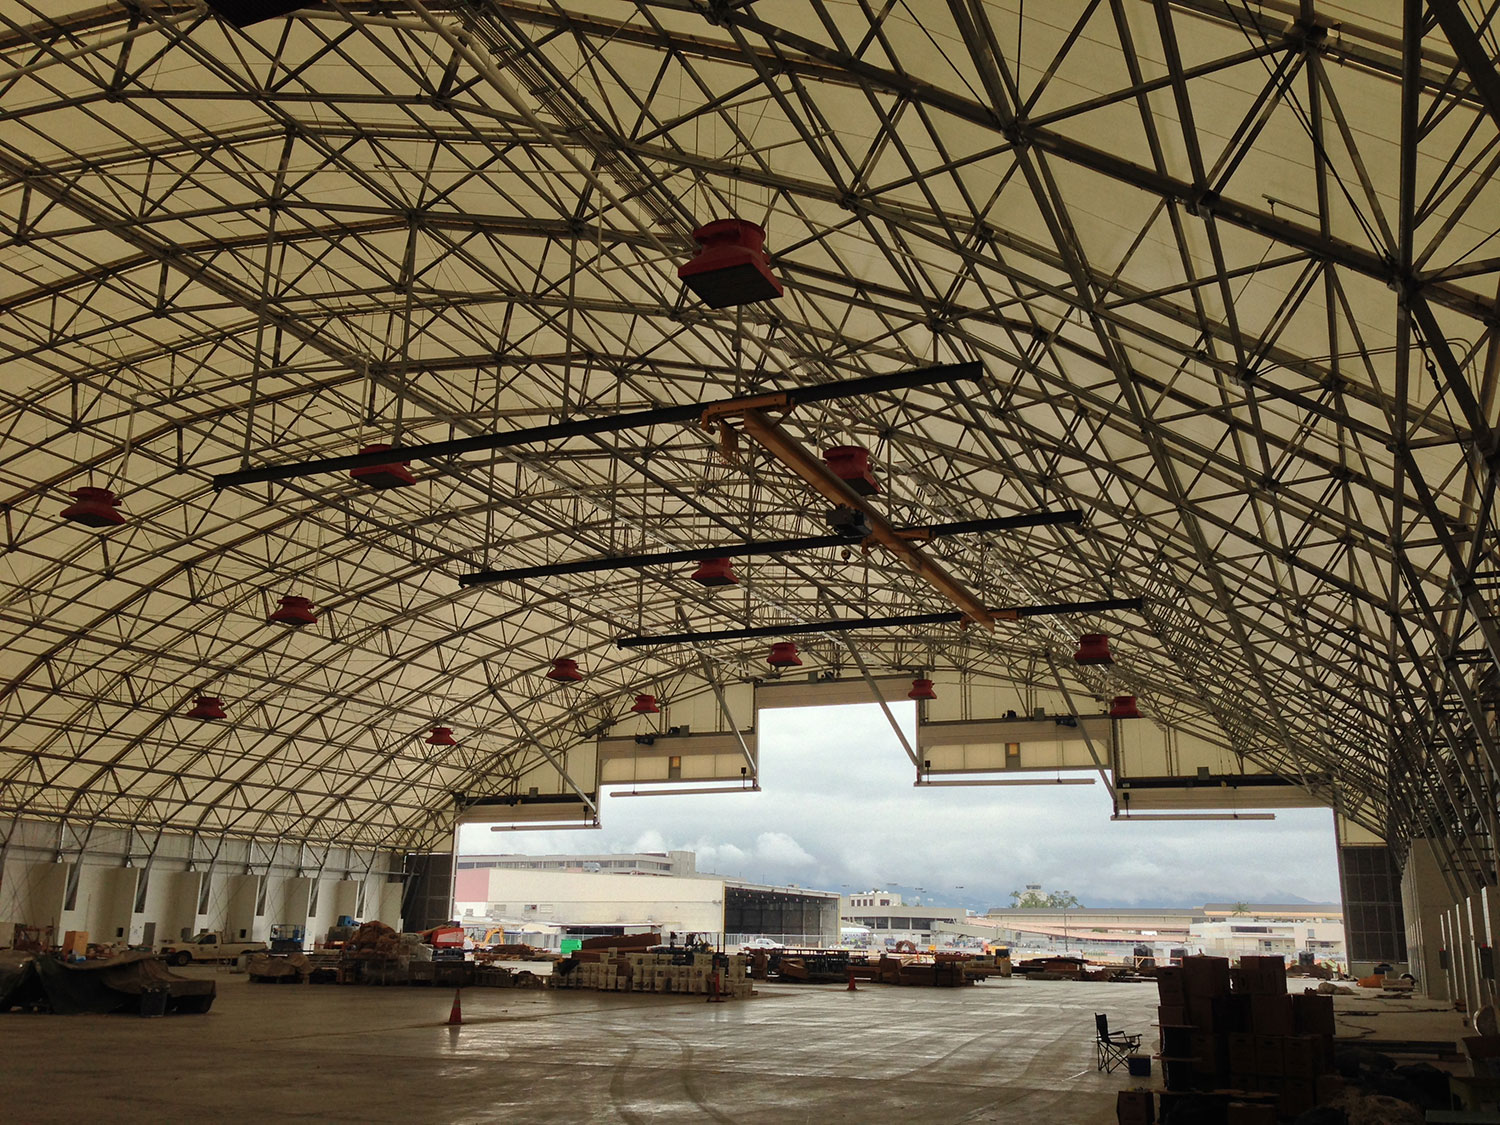 Honolulu International Airport Aircraft Maintenance & Cargo Complex